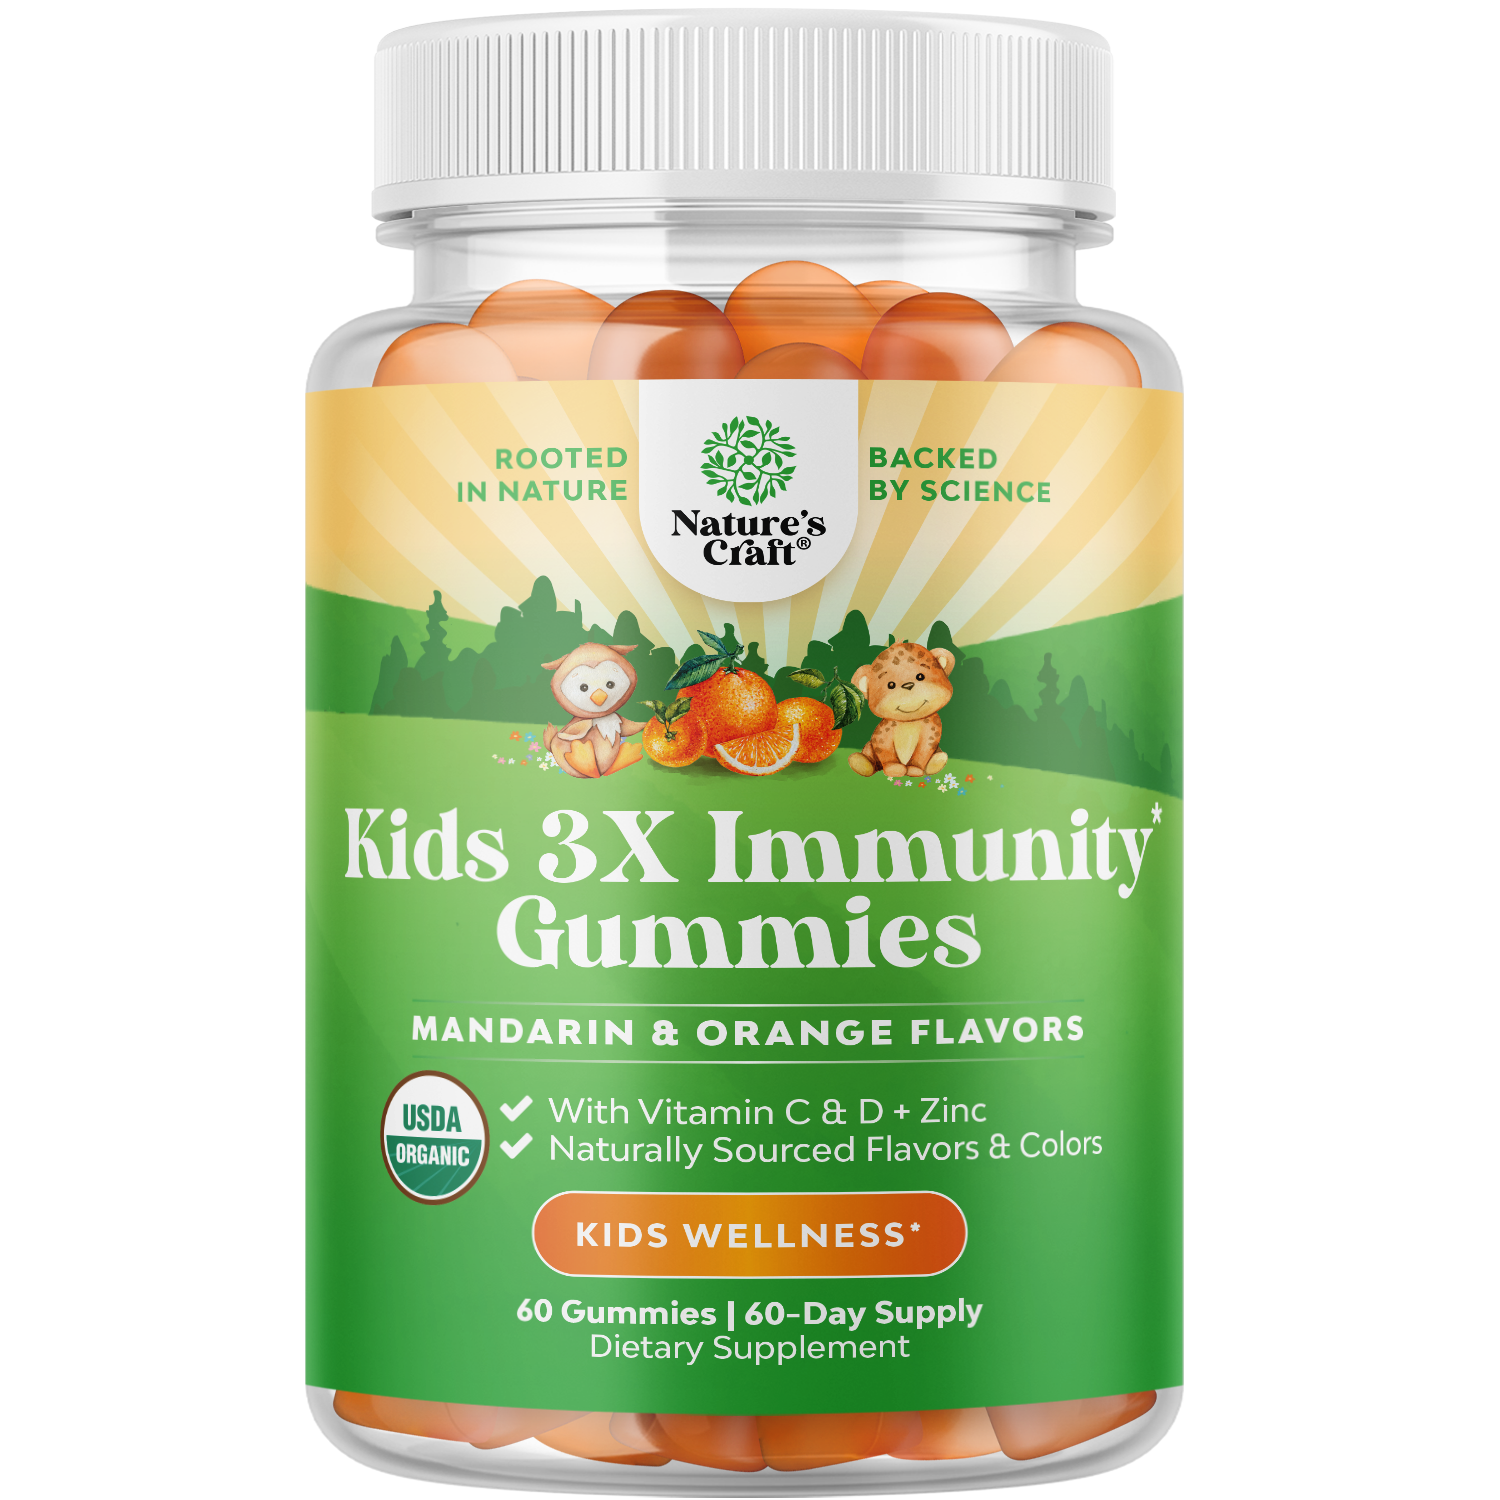 Kids 3X Immunity Gummies